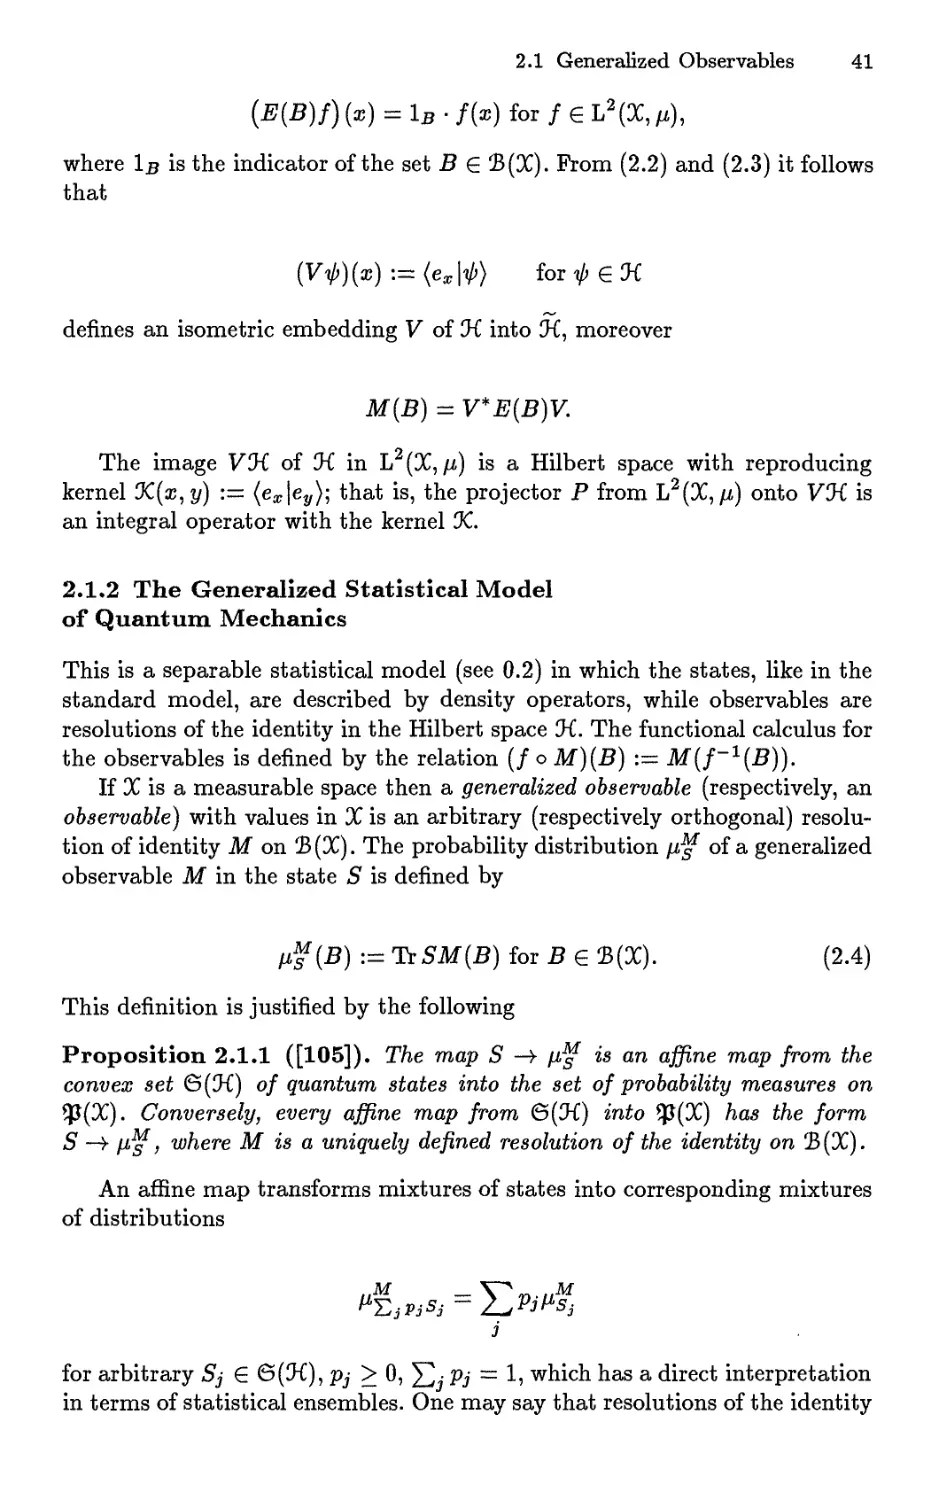 2.1.2 The Generalized Statistical Model of Quantum Mechanics